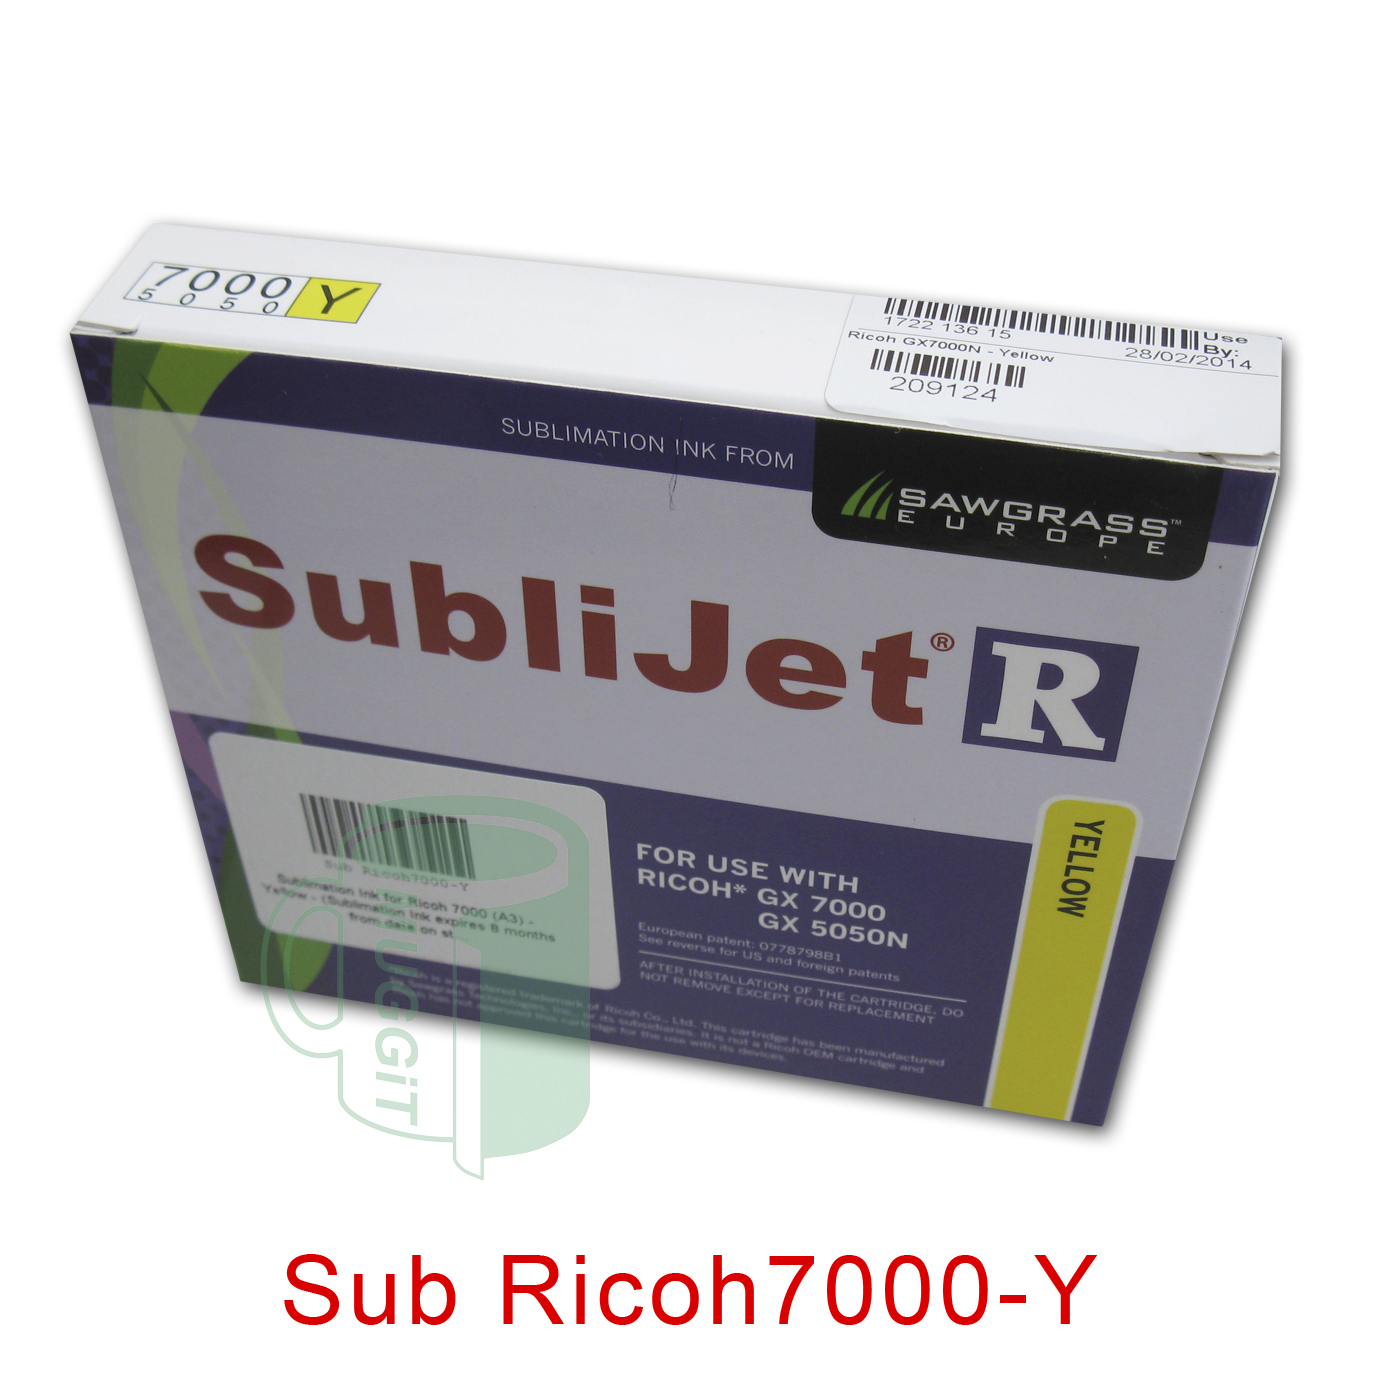 Sub Ricoh7000-Y